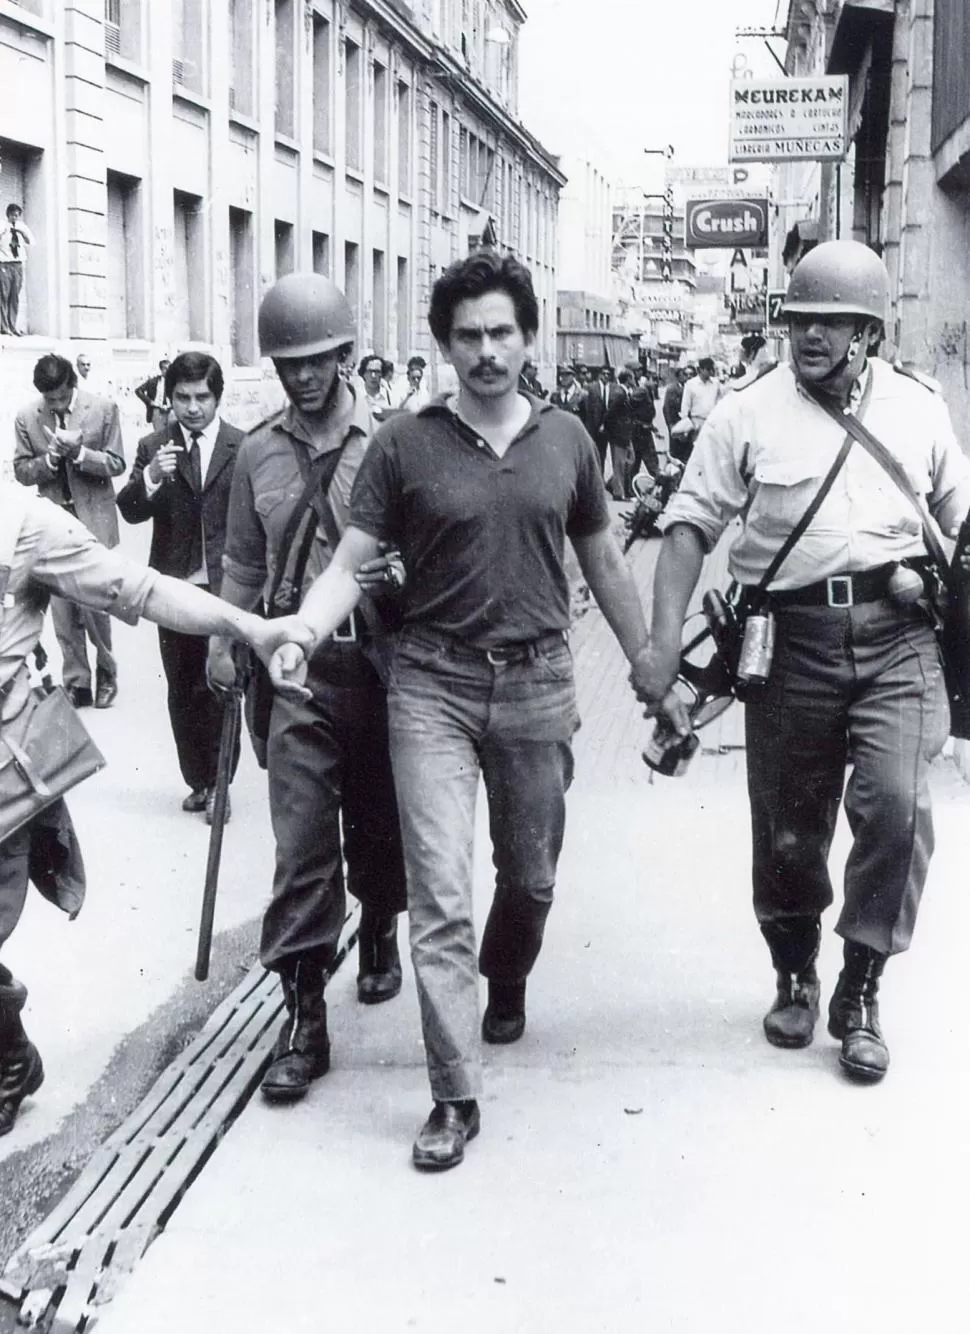 FOTO HISTÓRICA. Héctor Marteau es detenido en Muñecas al 200 en 1971. la gaceta / foto de archivo